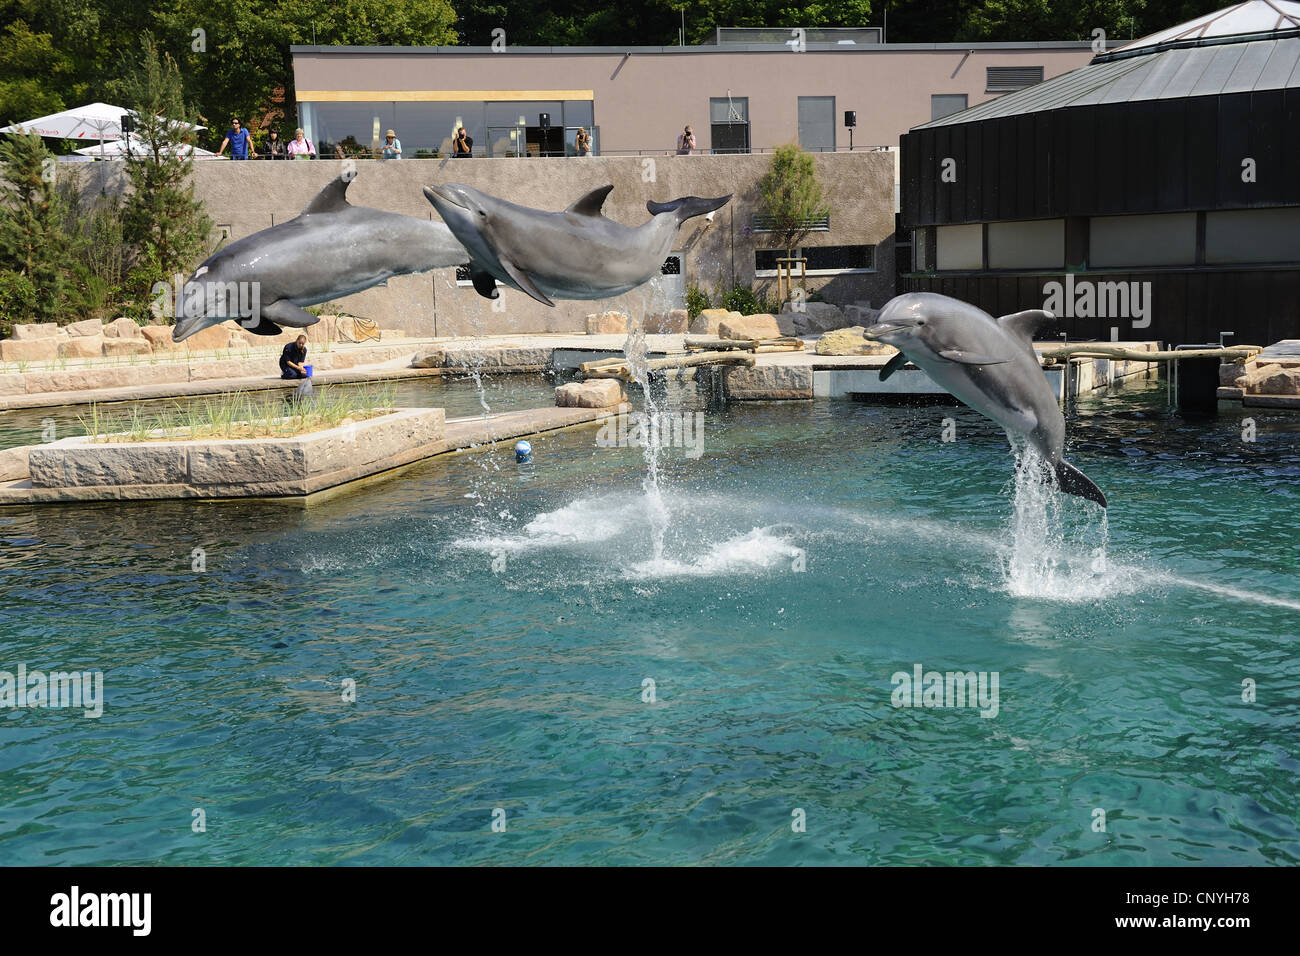 Bottlenosed dolphin, à nez de bouteille commun dauphin (Tursiops truncatus), trois dauphins dans un dolpinarium sautant de l'eau Banque D'Images